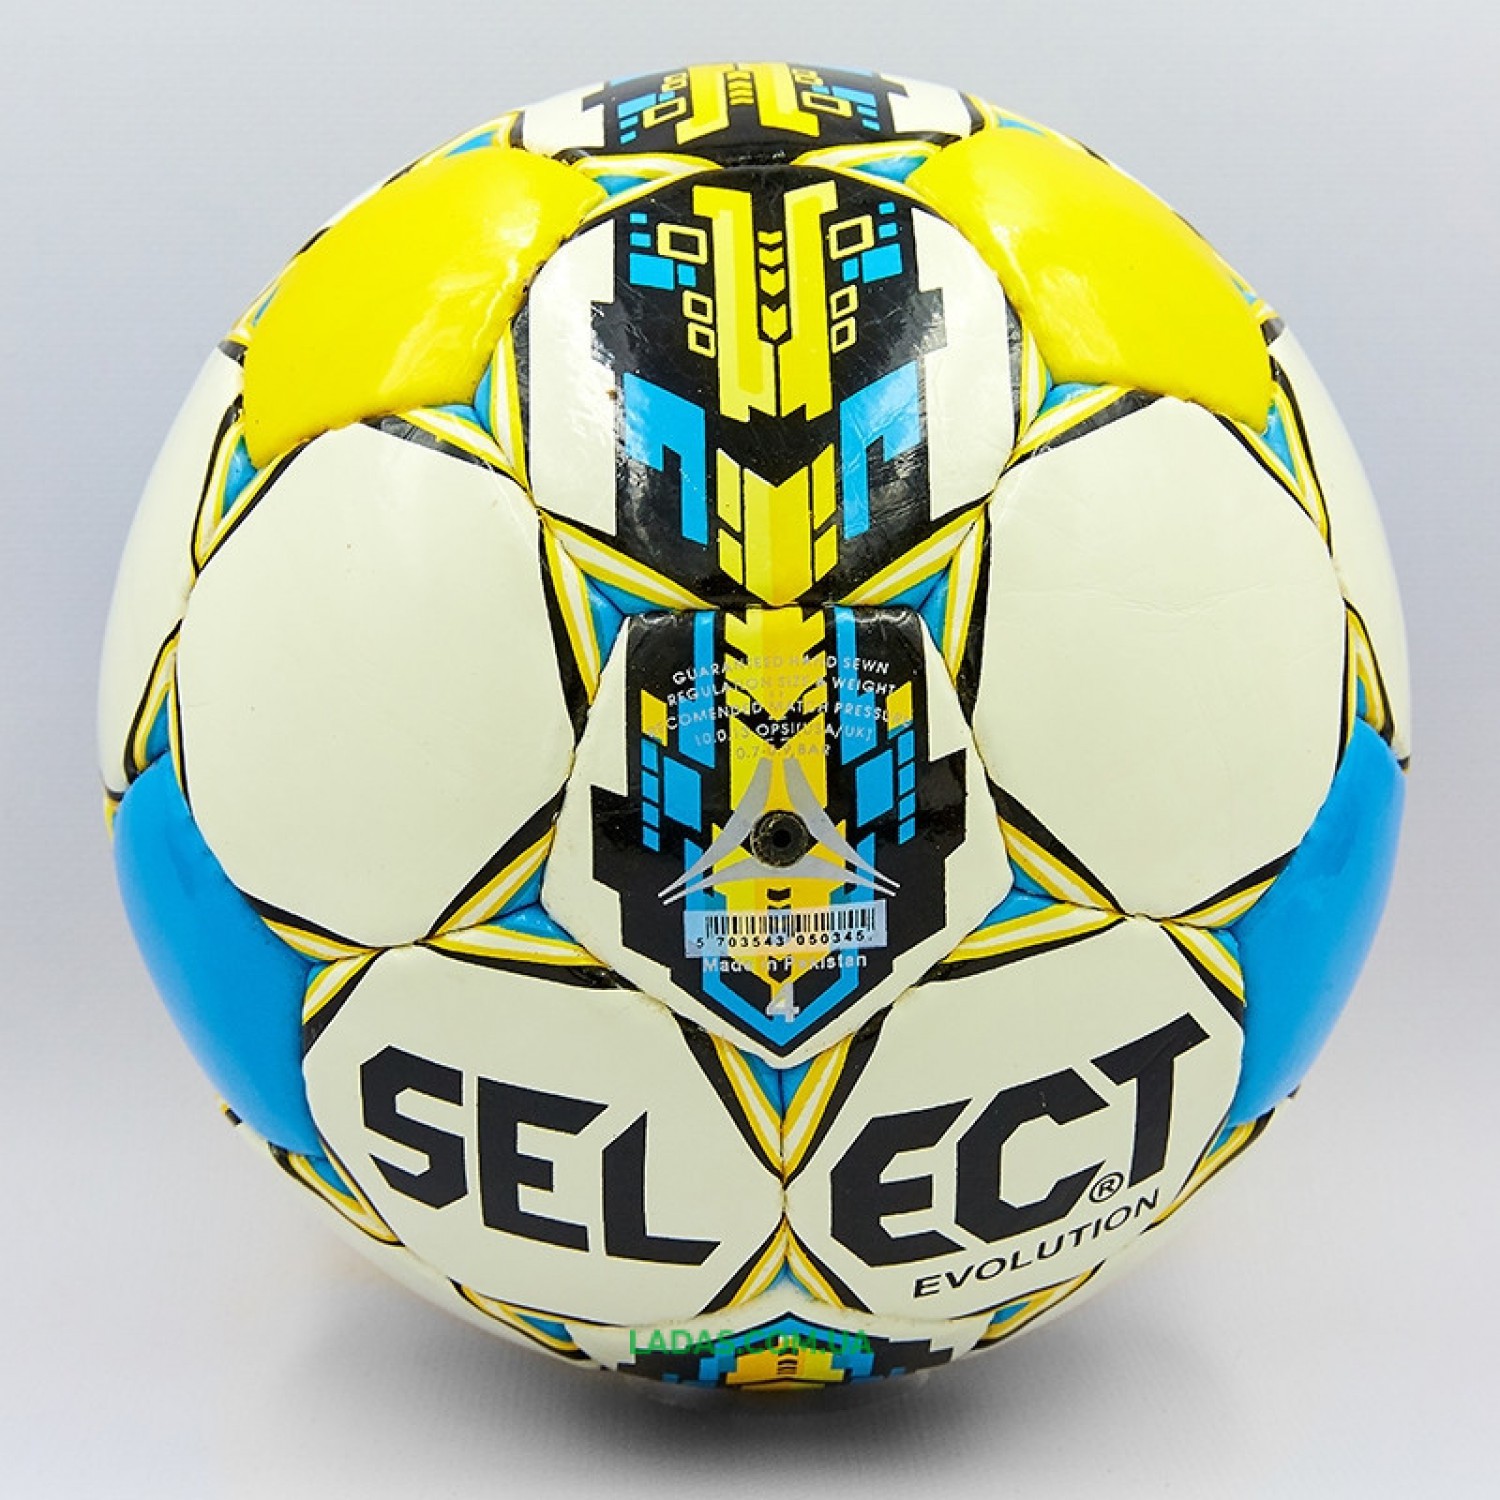 Мяч футбольный №4 PU ламинированный ST TALENTO (бело-желтый-синий, сшит вручную)